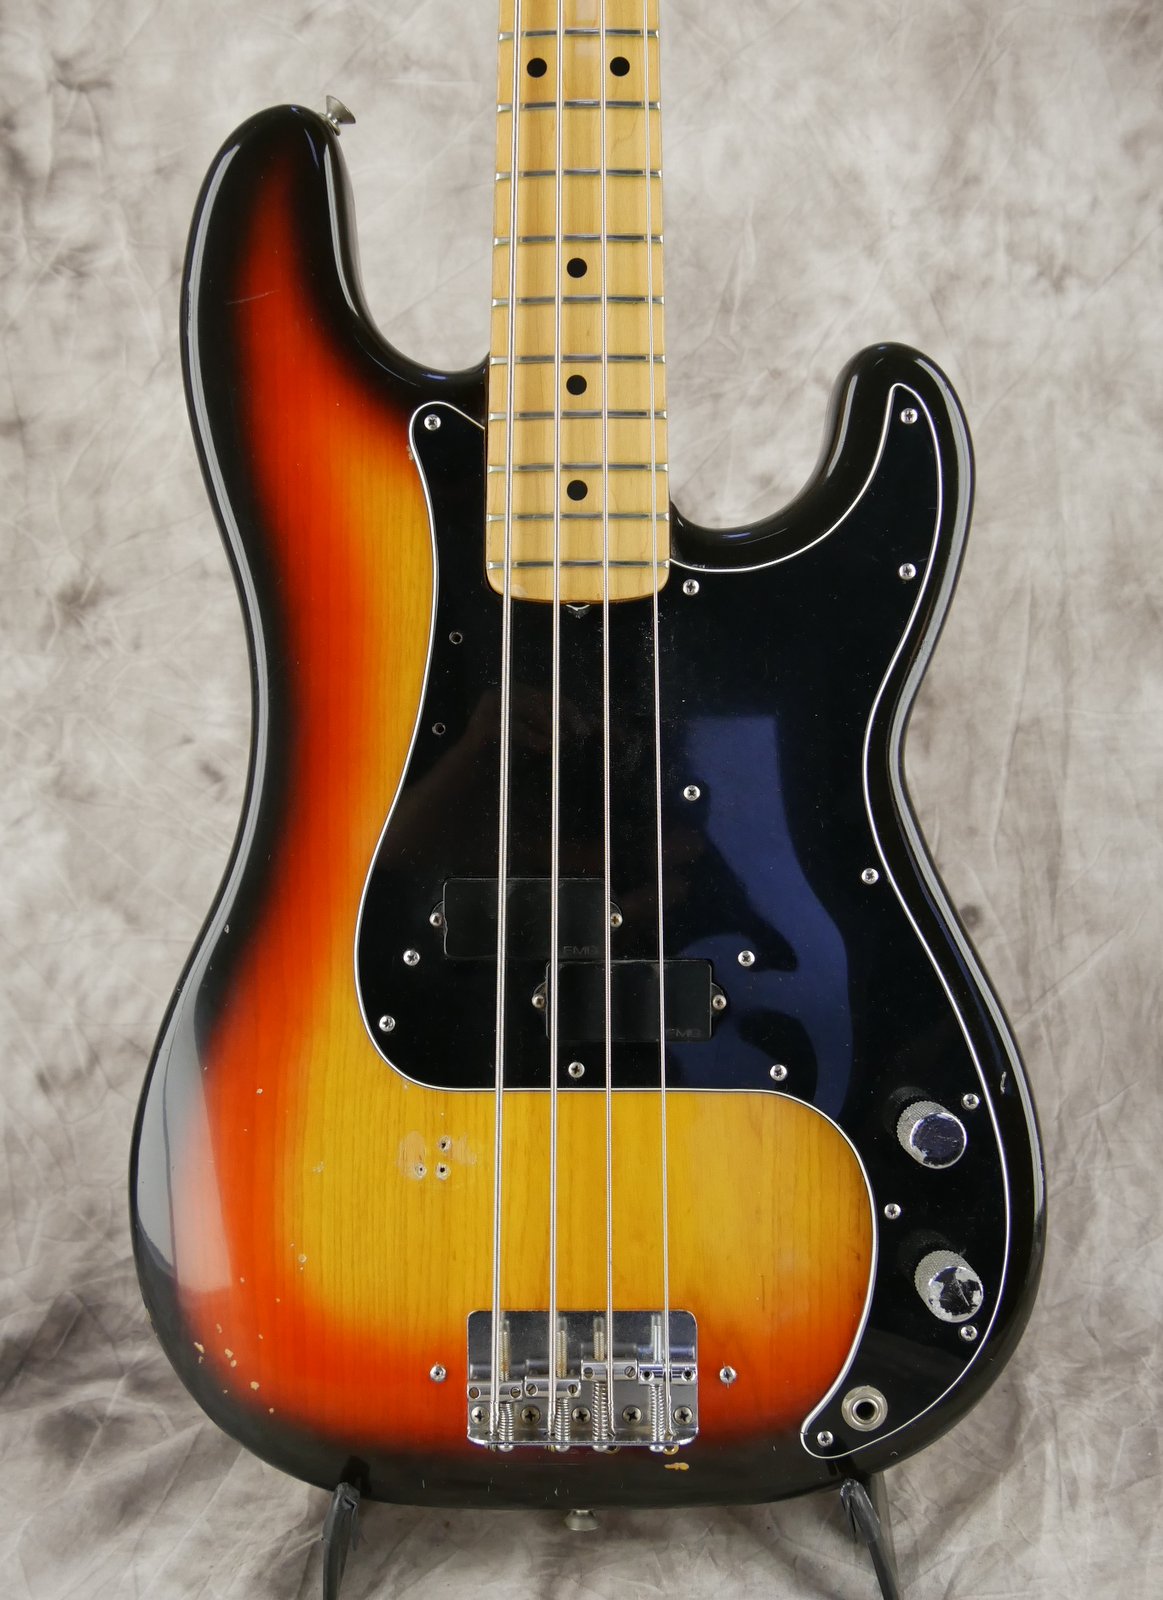 Fender-Precision-Bass-1979-sunburst-002.JPG